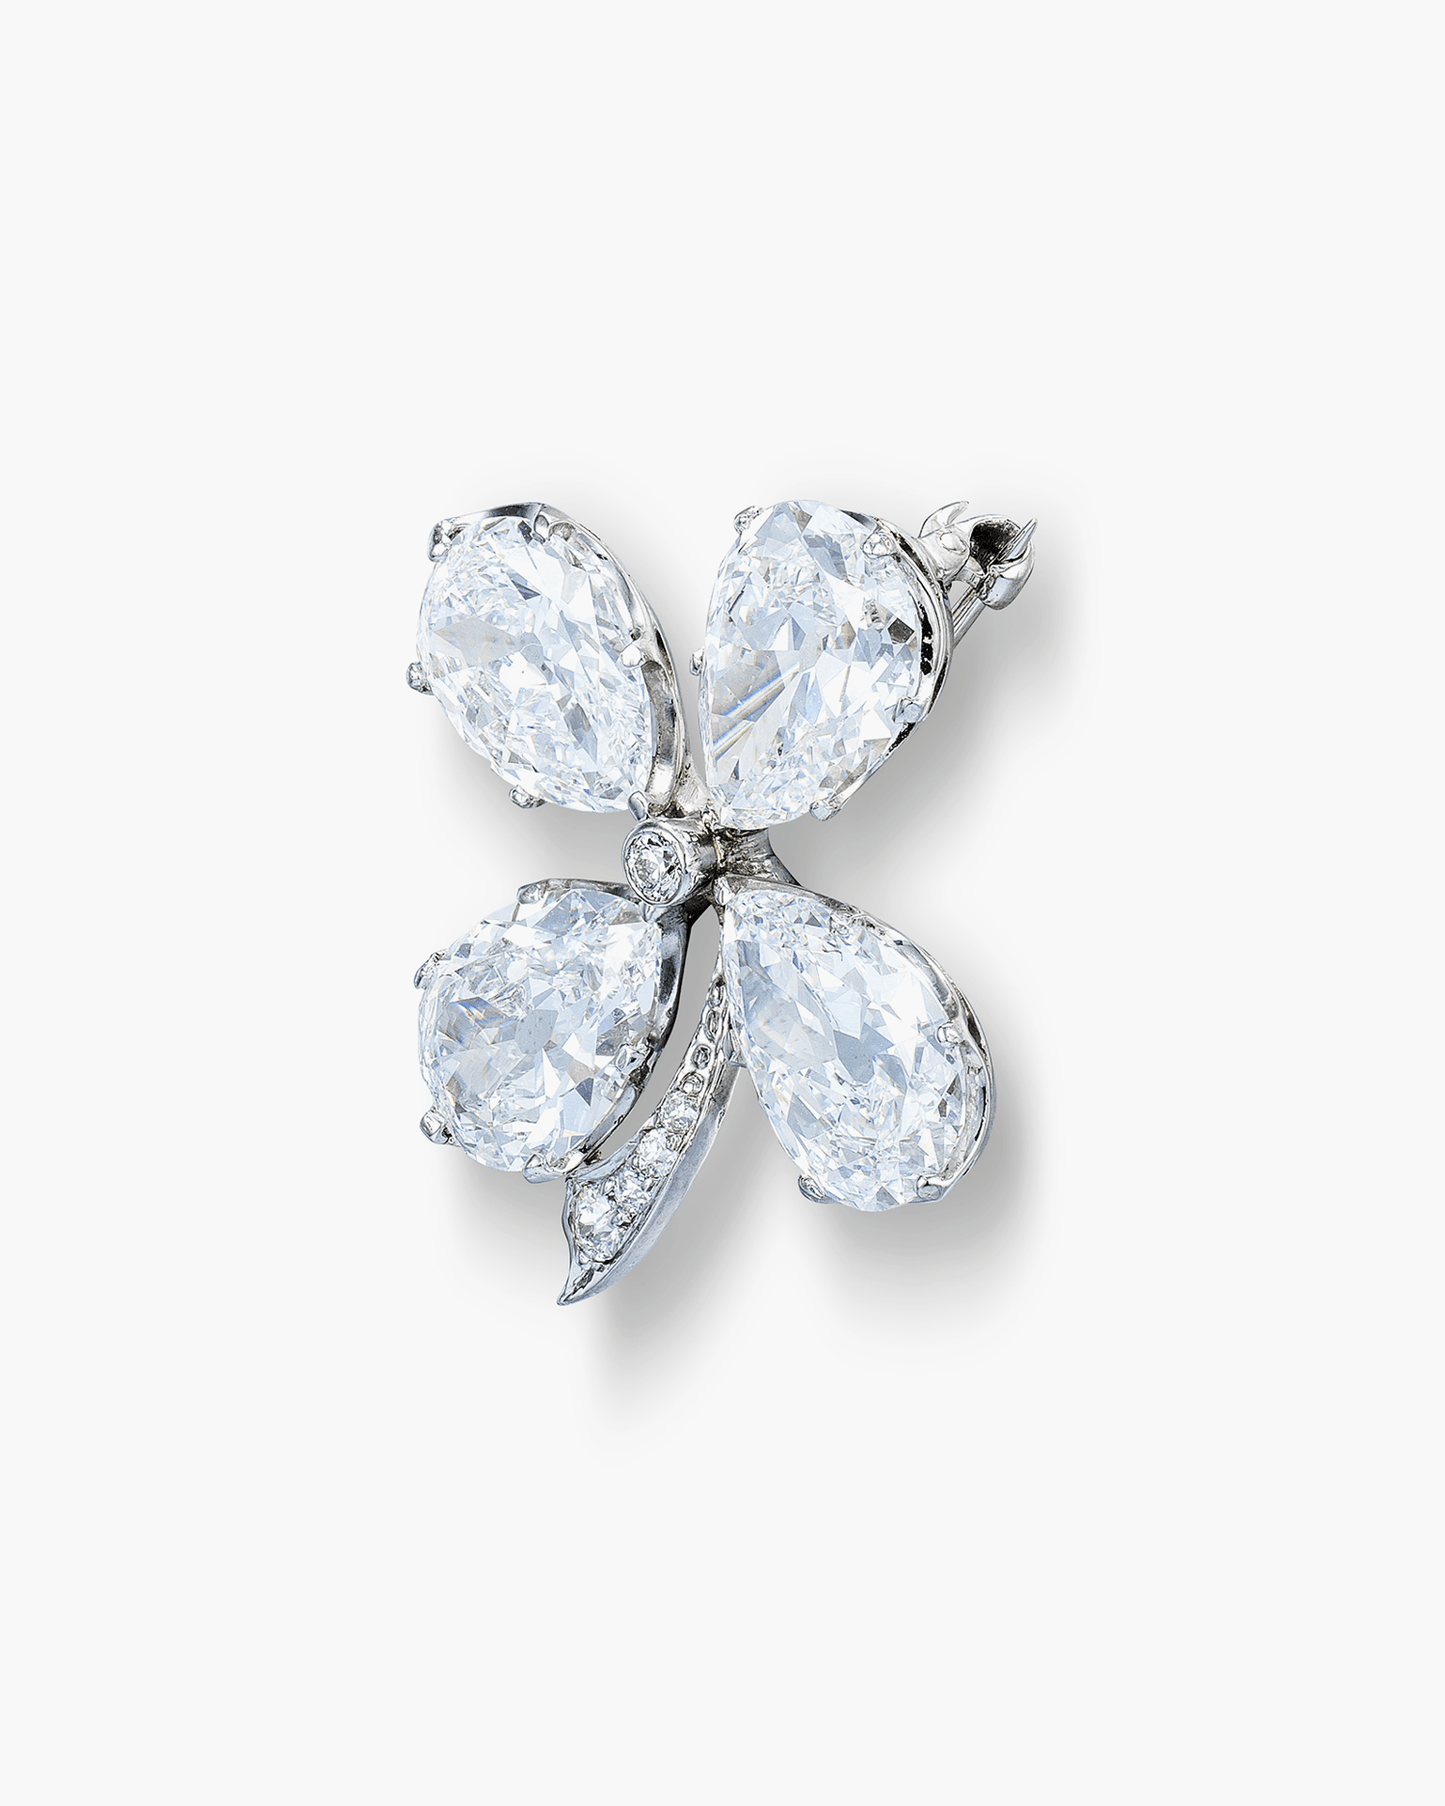 Edwardian Diamond Four-Leaf Clover Brooch by Tiffany & Co.